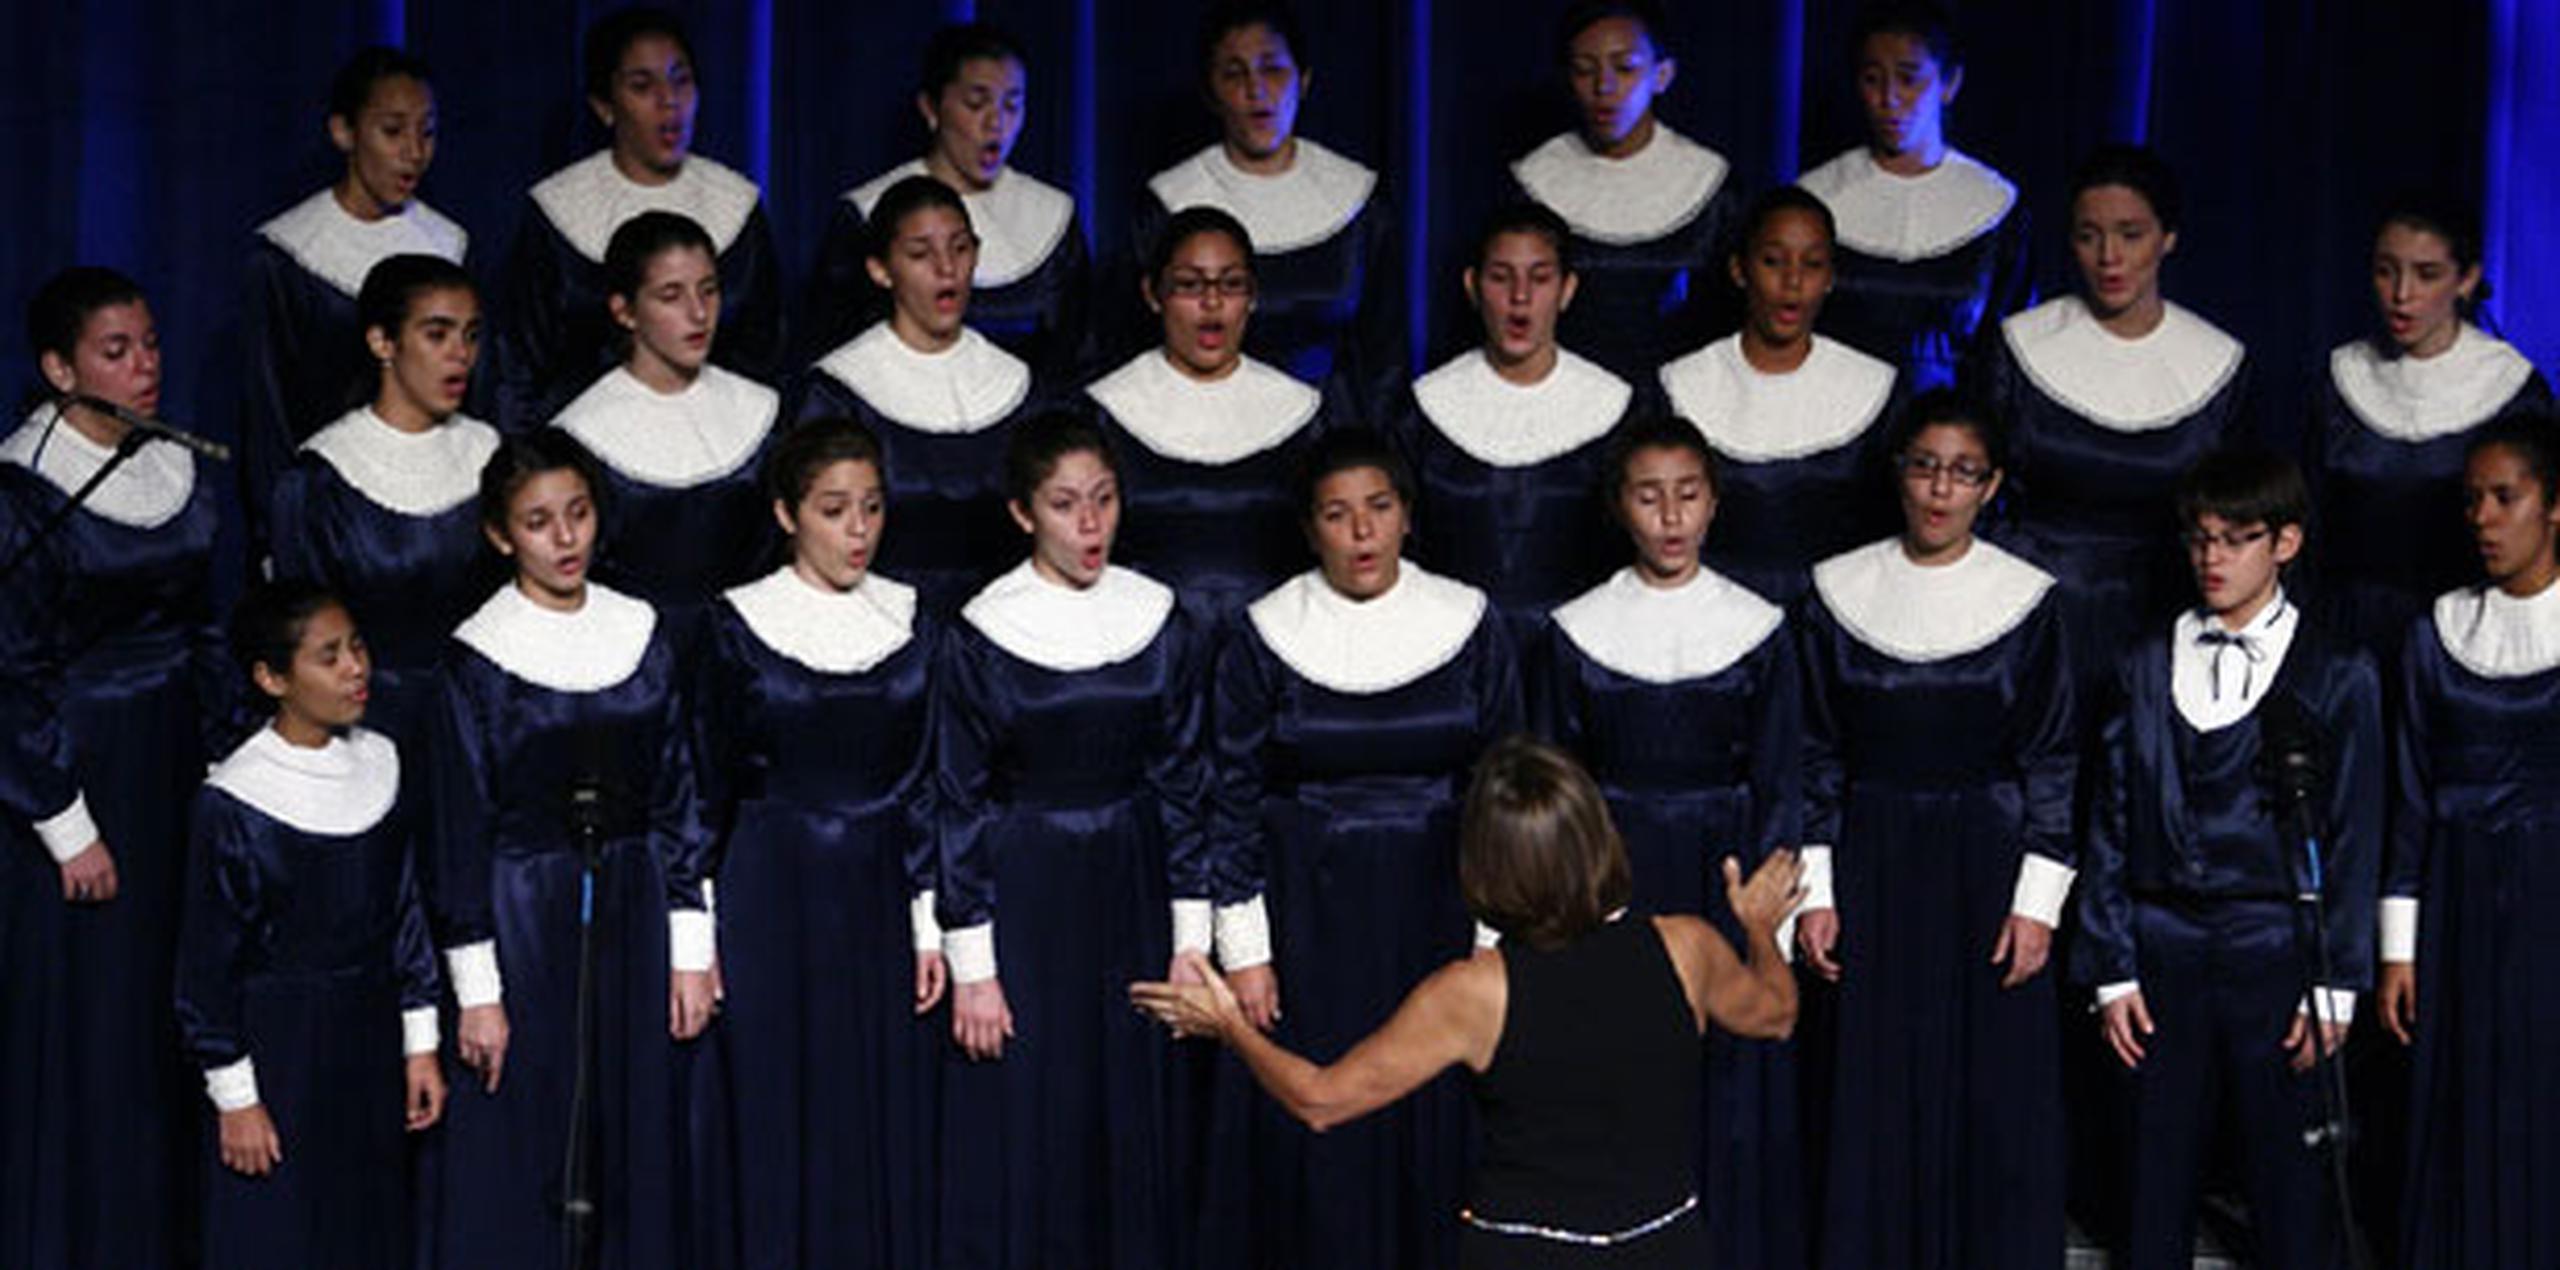 Desde su fundación hace casi cinco décadas, el Coro de Niños de San Juan ha sumado múltiples éxitos y reconocimientos alrededor del mundo. (Archivo)